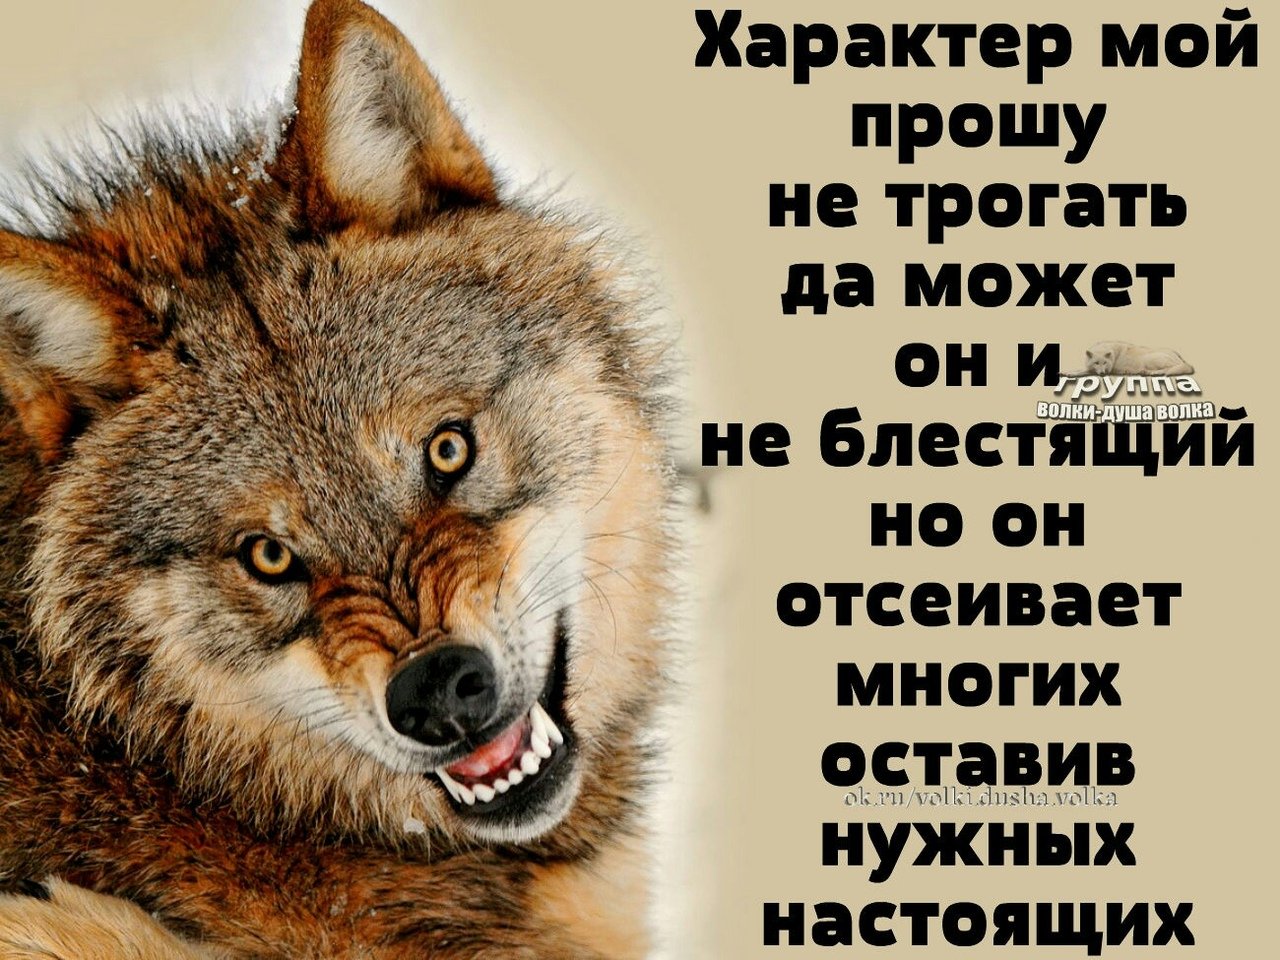 Пословица не проси. Мудрость волка. Афоризмы про Волков. Волк афоризмы. Мудрость Волков.